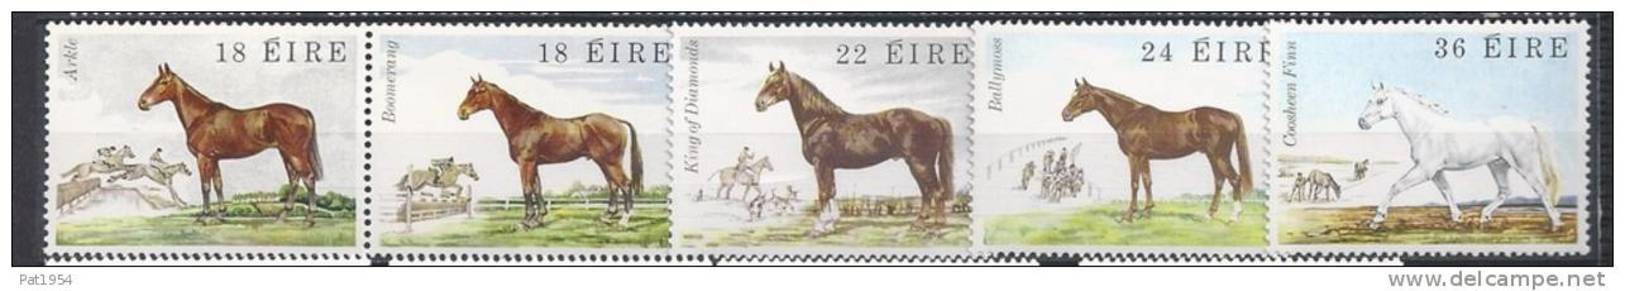 Irlande 1981 N°453/457 Neufs ** Chevaux - Unused Stamps